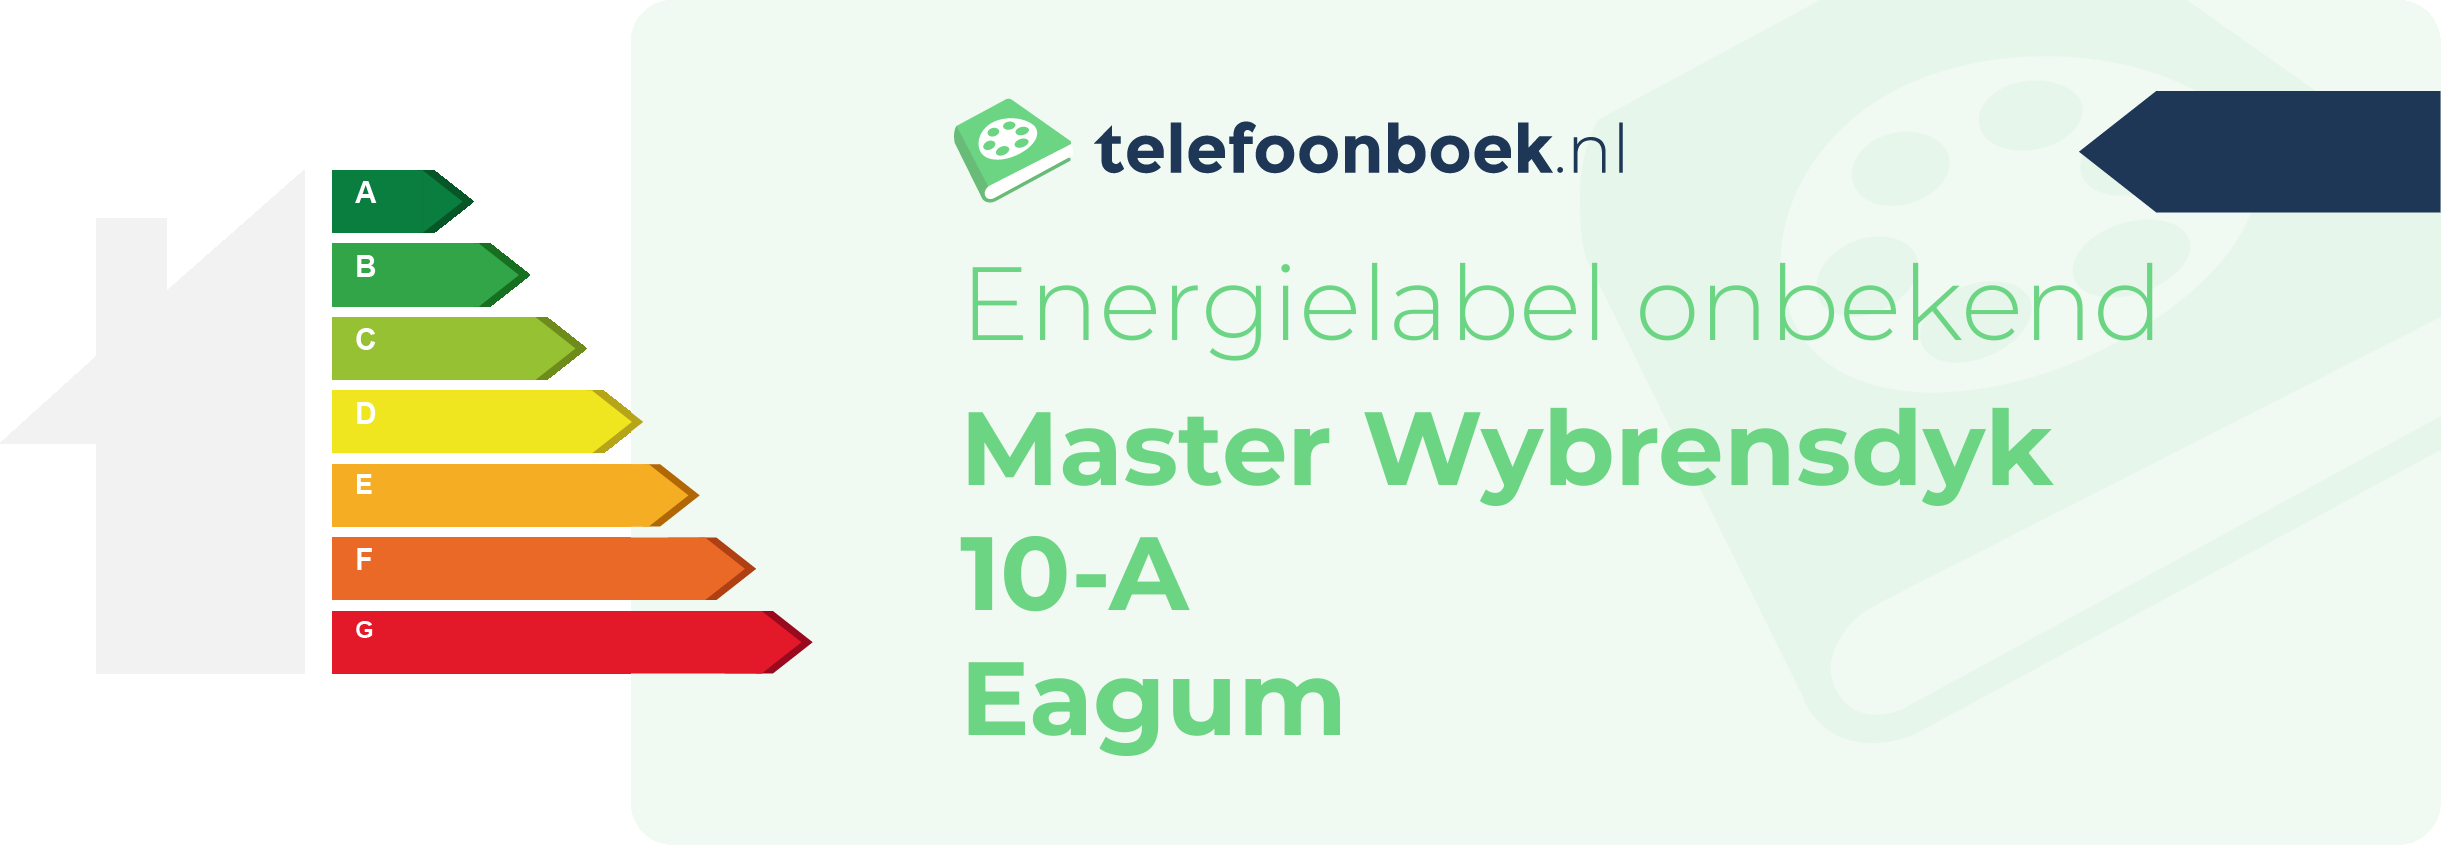 Energielabel Master Wybrensdyk 10-A Eagum